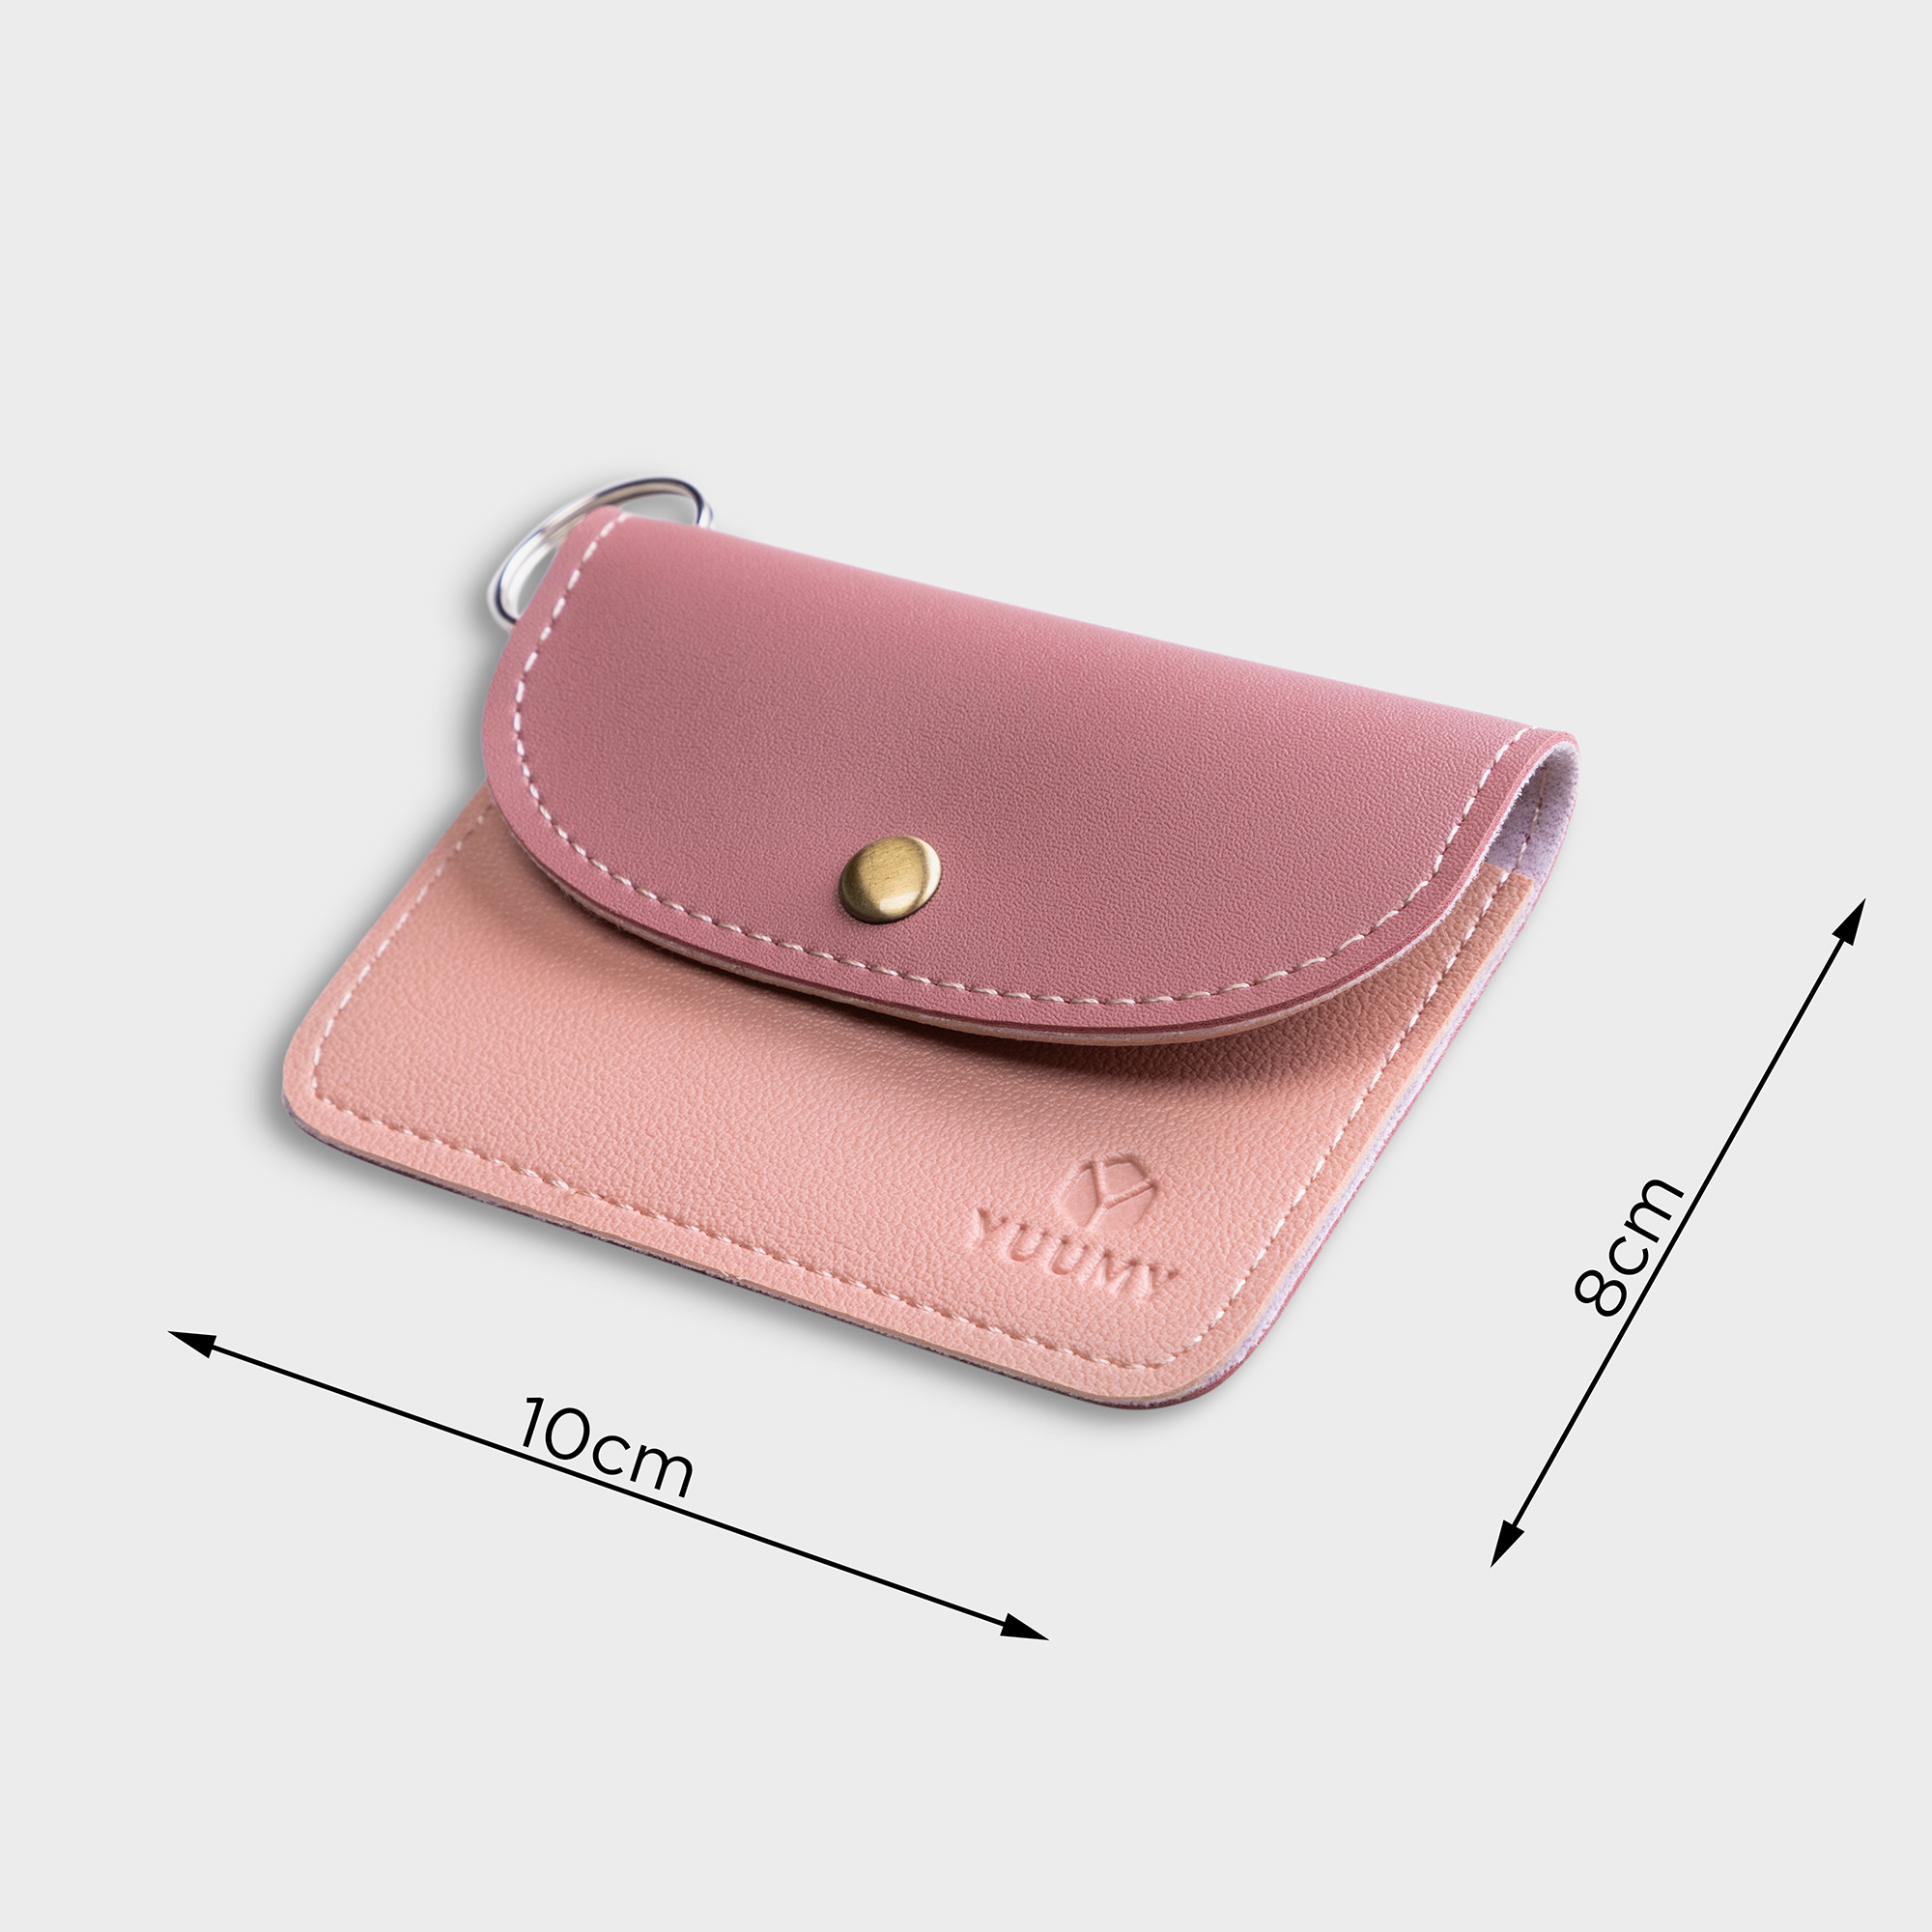 Móc khóa thời trang YUUMY YMK3 - Màu sắc trẻ trung - Thiết kế hiện đại - Đa chức năng sử dụng - Đựng thẻ ngân hàng, thẻ xe, chìa khóa xe - Tiên dụng mang theo bên người (Dài 10cm x Cao 8cm )